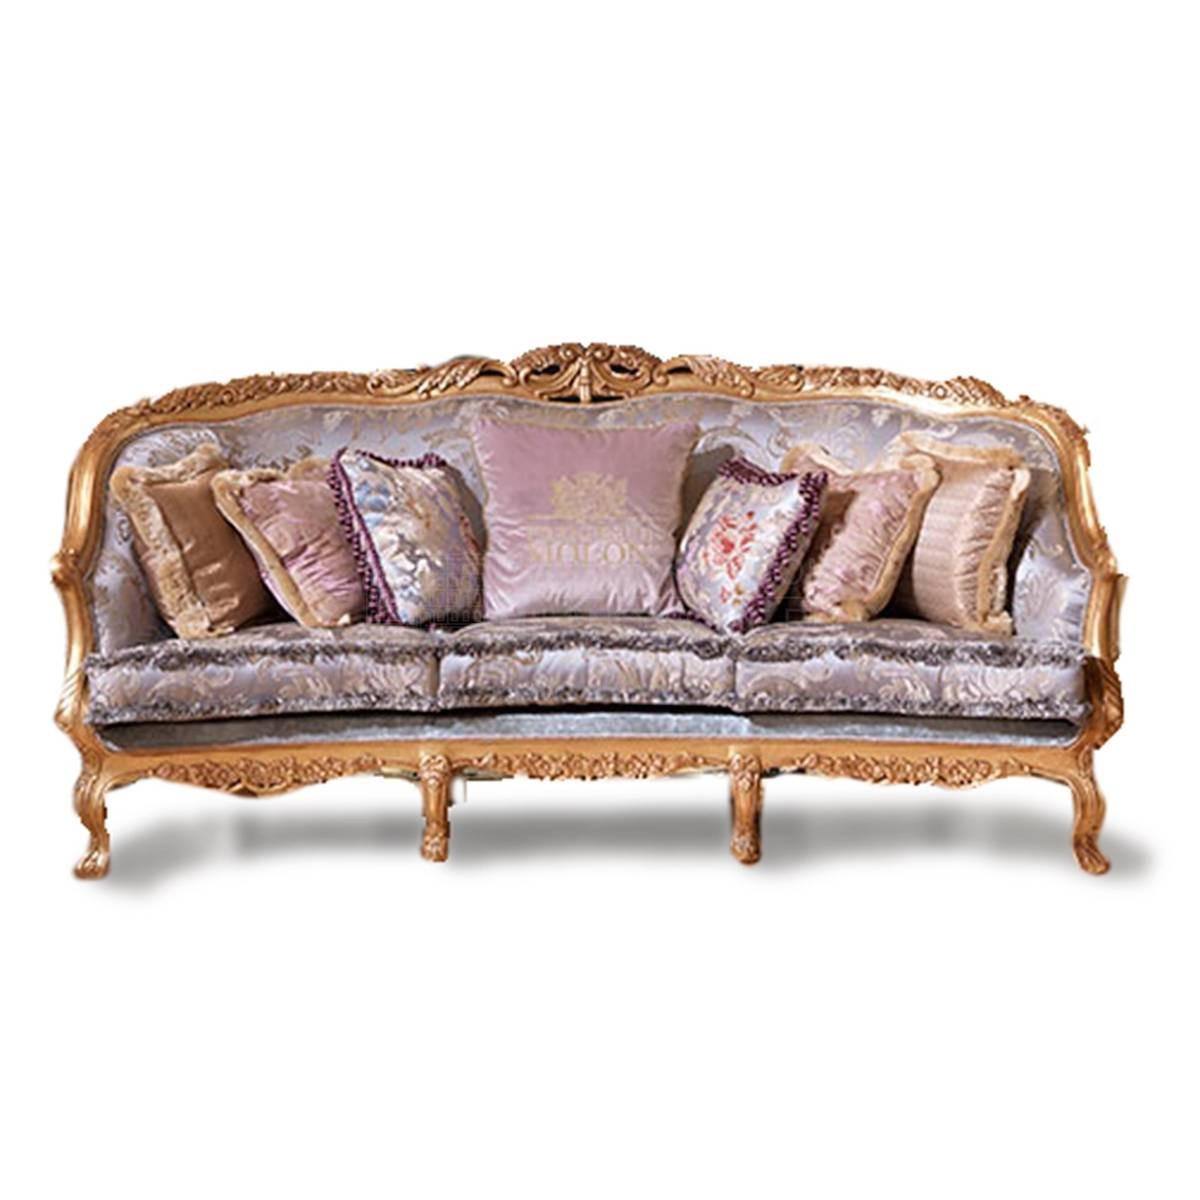 Прямой диван The Upholstery/D329.02 из Италии фабрики FRANCESCO MOLON